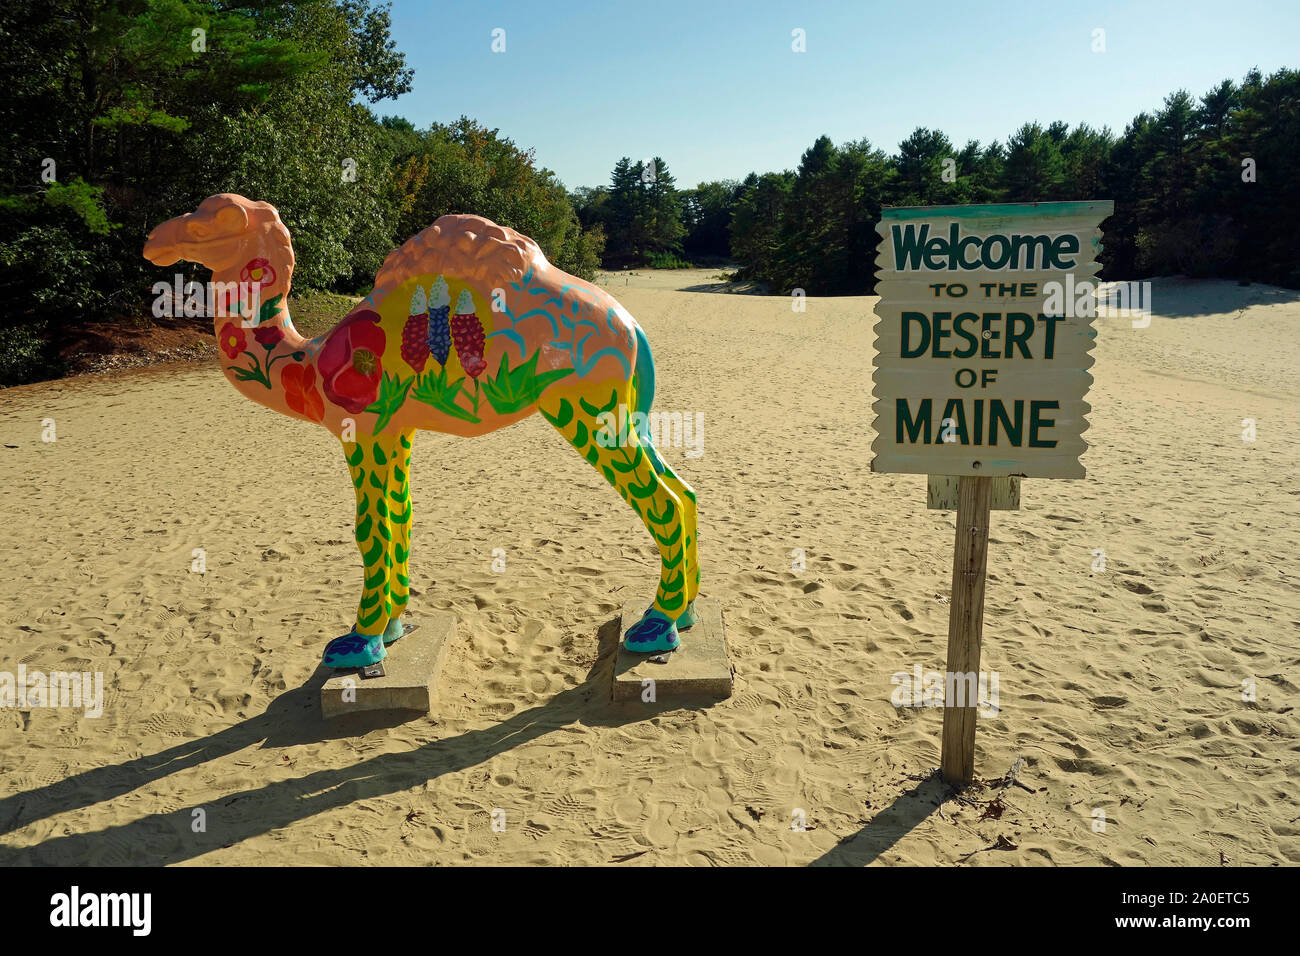 The desert of Maine Stock Photo